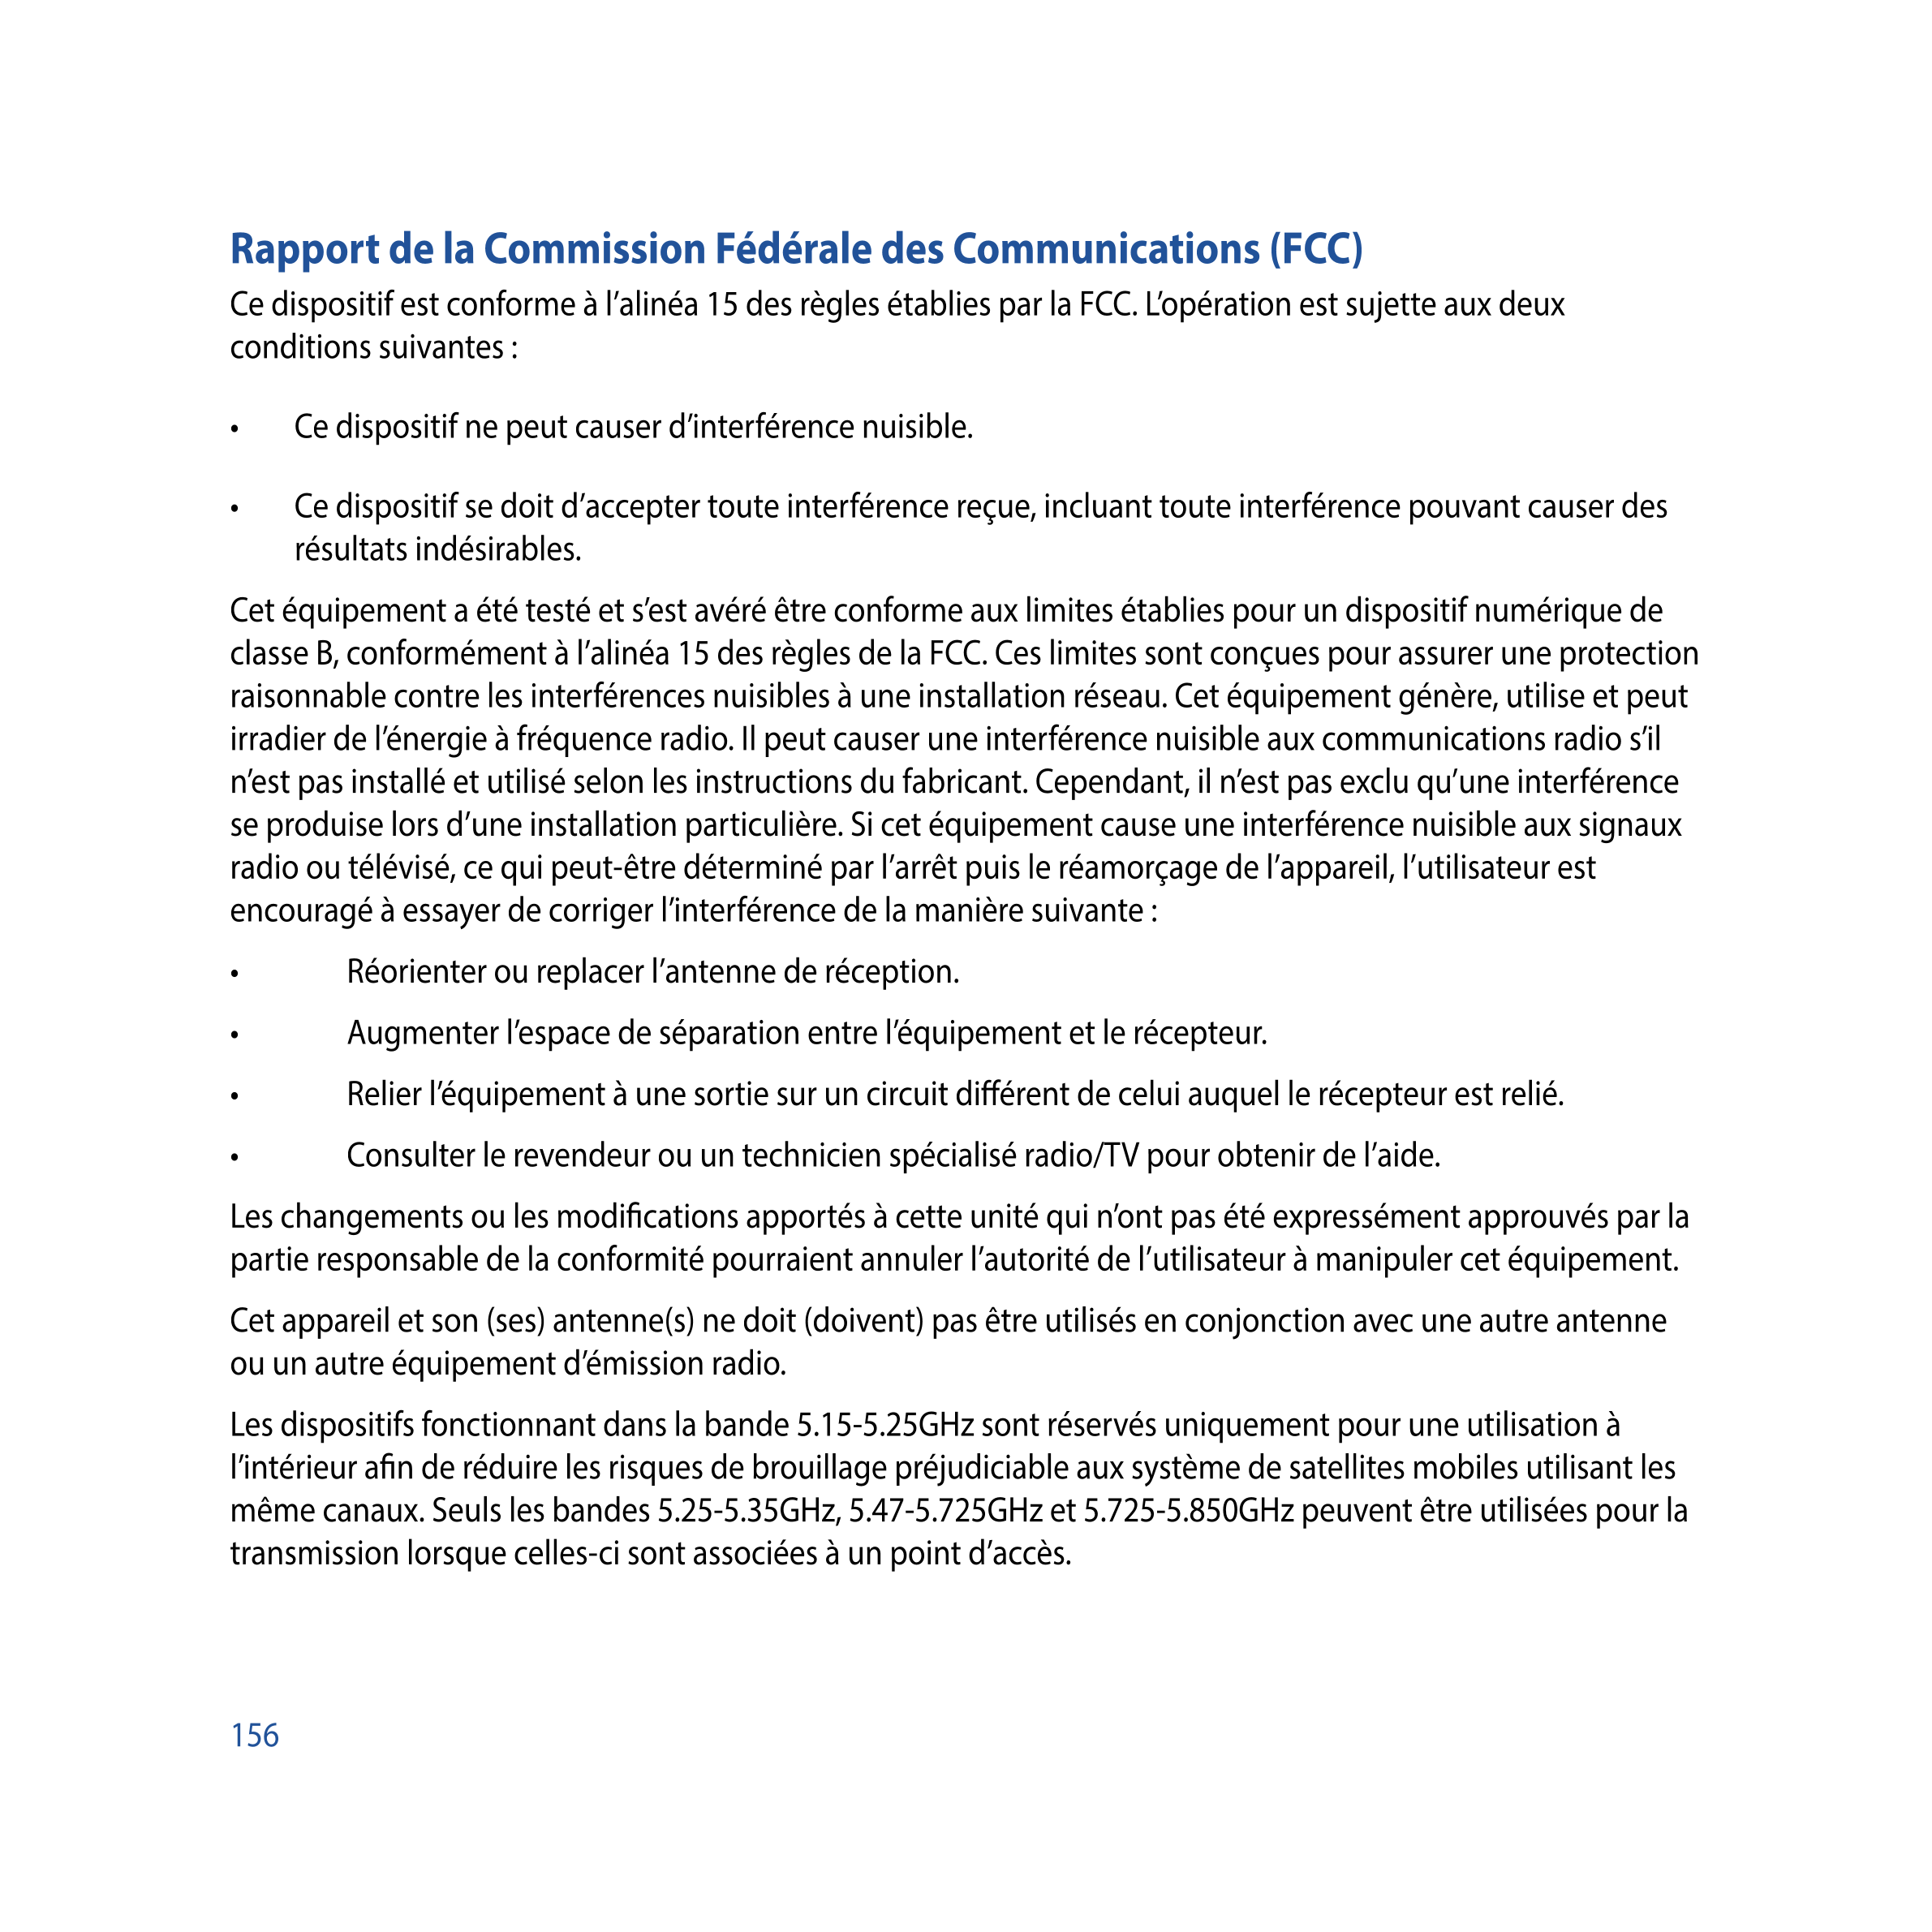 Rapport de la Commission Fédérale des Communications (FCC)
Ce dispositif est conforme à l’alinéa 15 des règles établies par la F